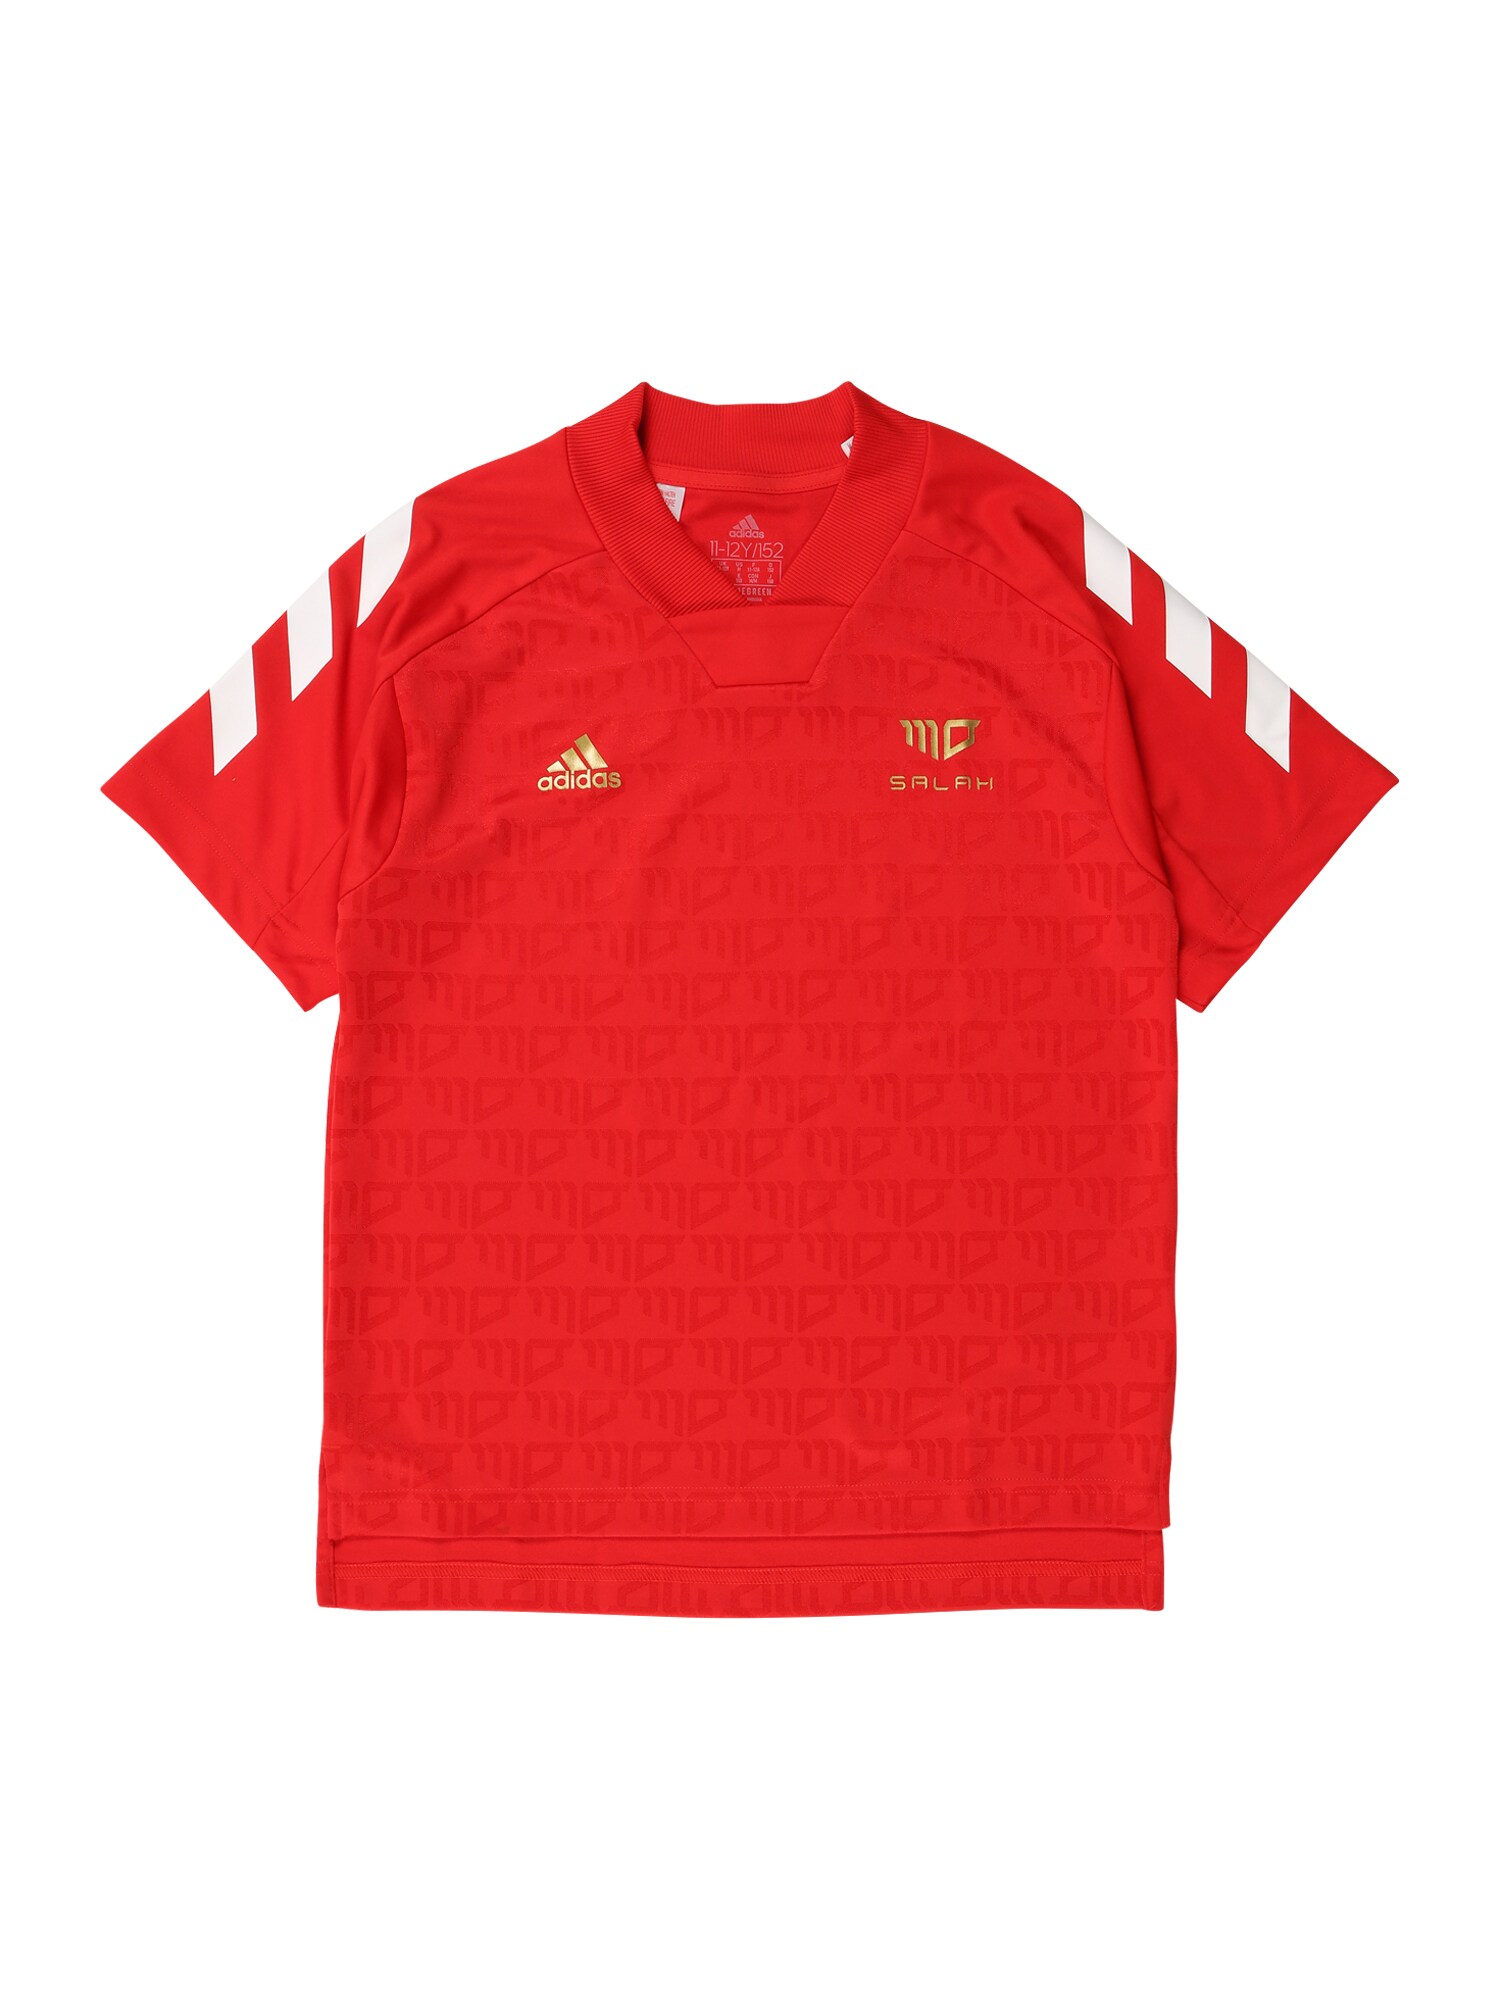 ADIDAS PERFORMANCE Sportiniai marškinėliai 'Salah'  raudona / auksas / balta